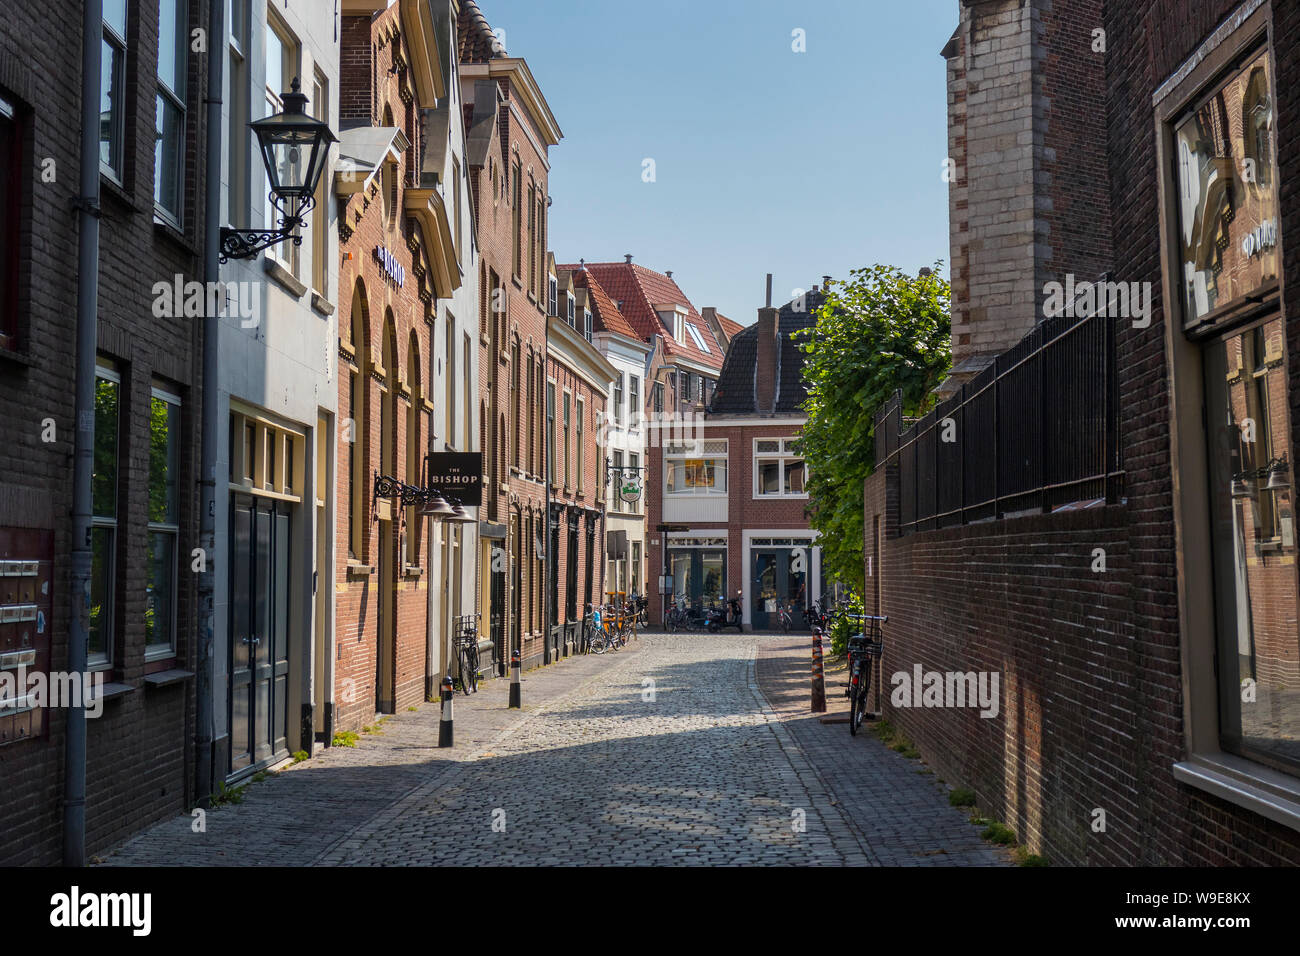 Leiden, Pays-Bas - 11 juillet 2019 : petite allée avec de vieux pavés dans le centre de Leyde Banque D'Images